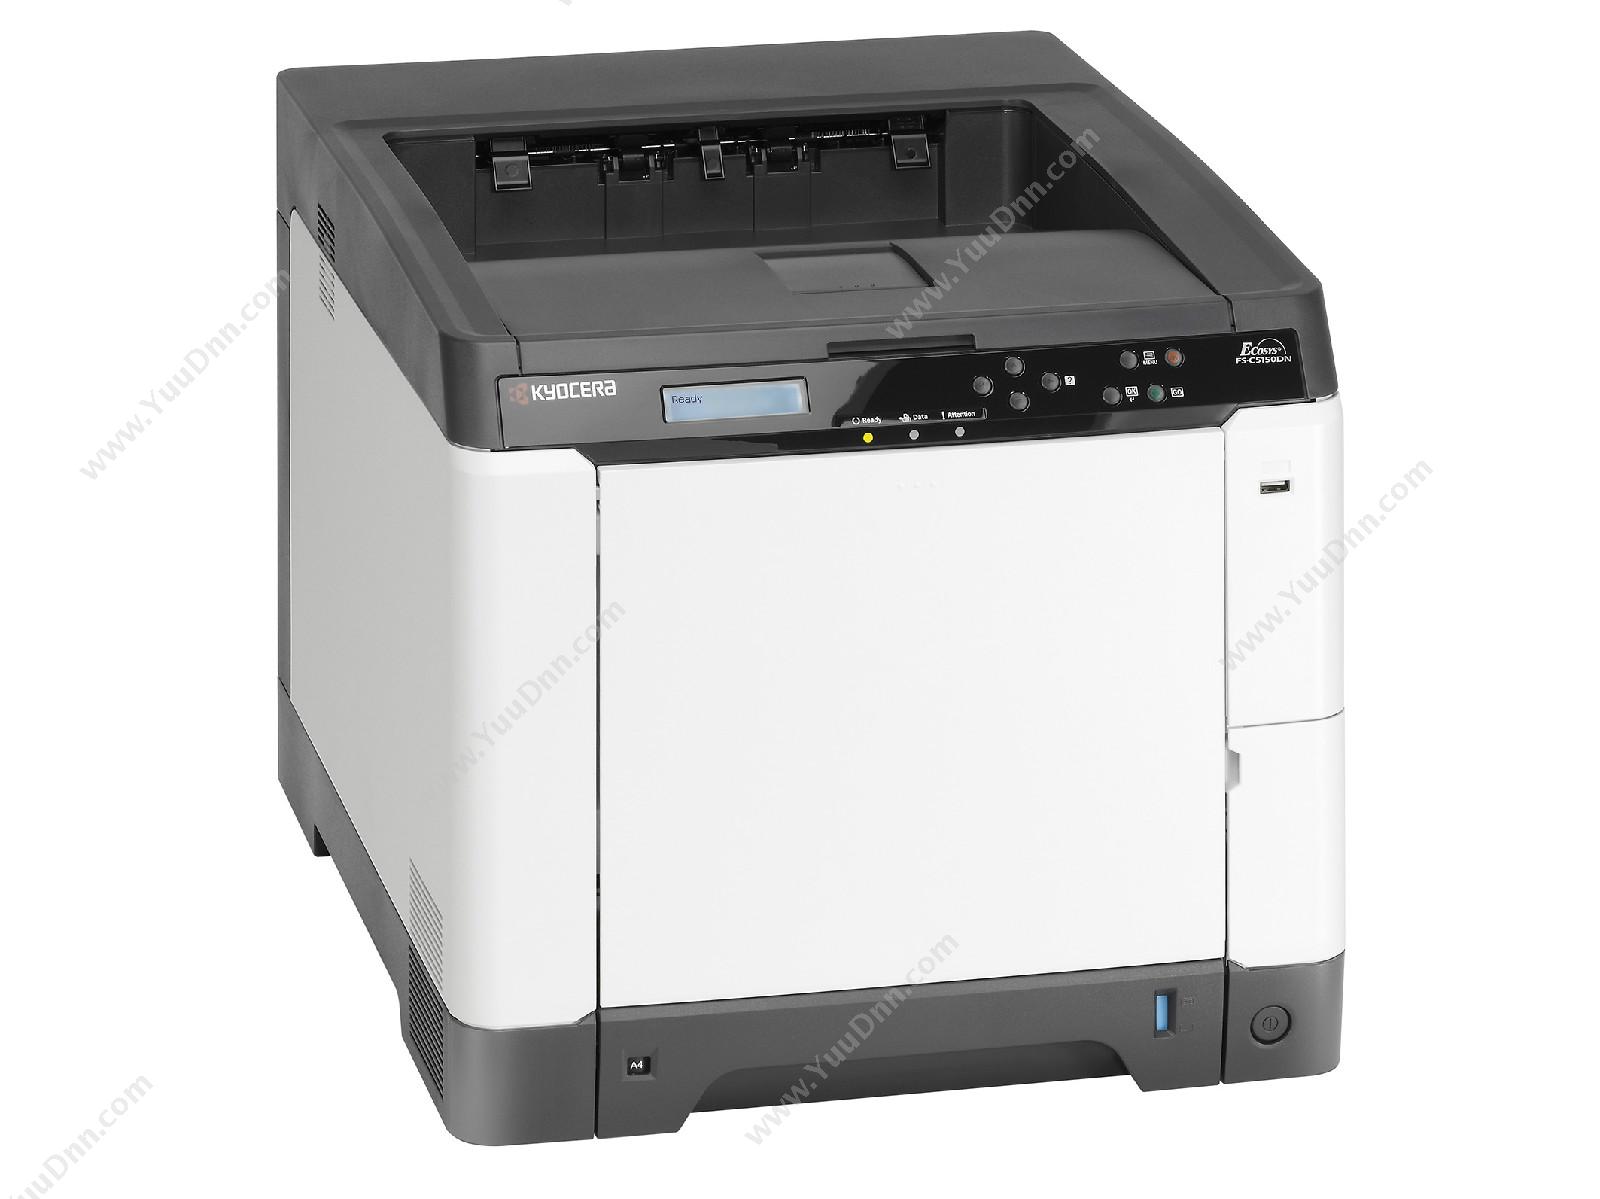 京瓷 KyoceraFS-C5150DN彩色A4幅面A4黑白激光打印机